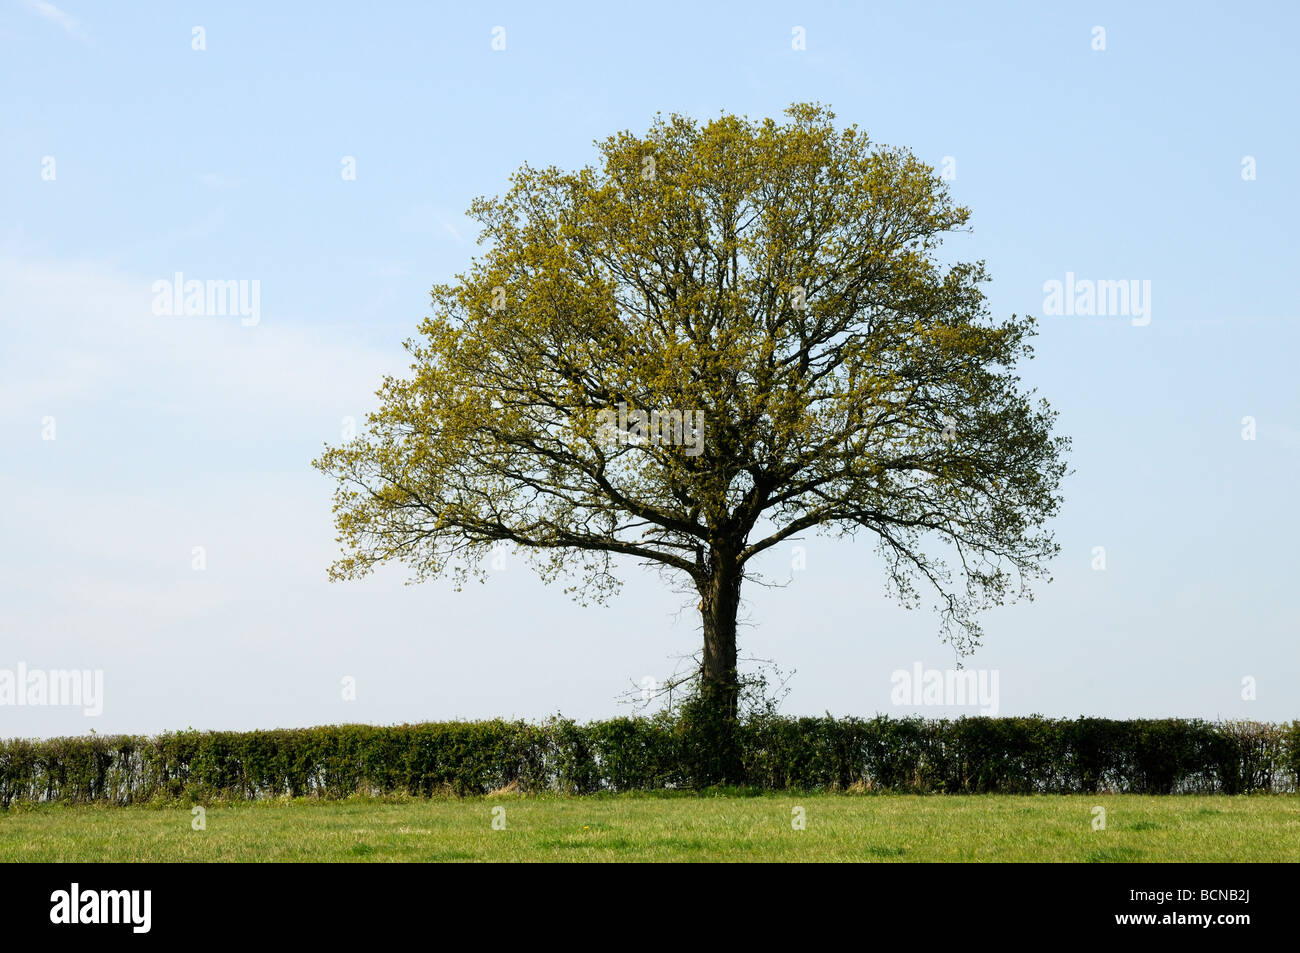 Un champ coupé nettement haie avec un chêne (Quercus robur) avec des feuilles juste apparaissant au printemps. Burwash, Sussex, UK. Banque D'Images